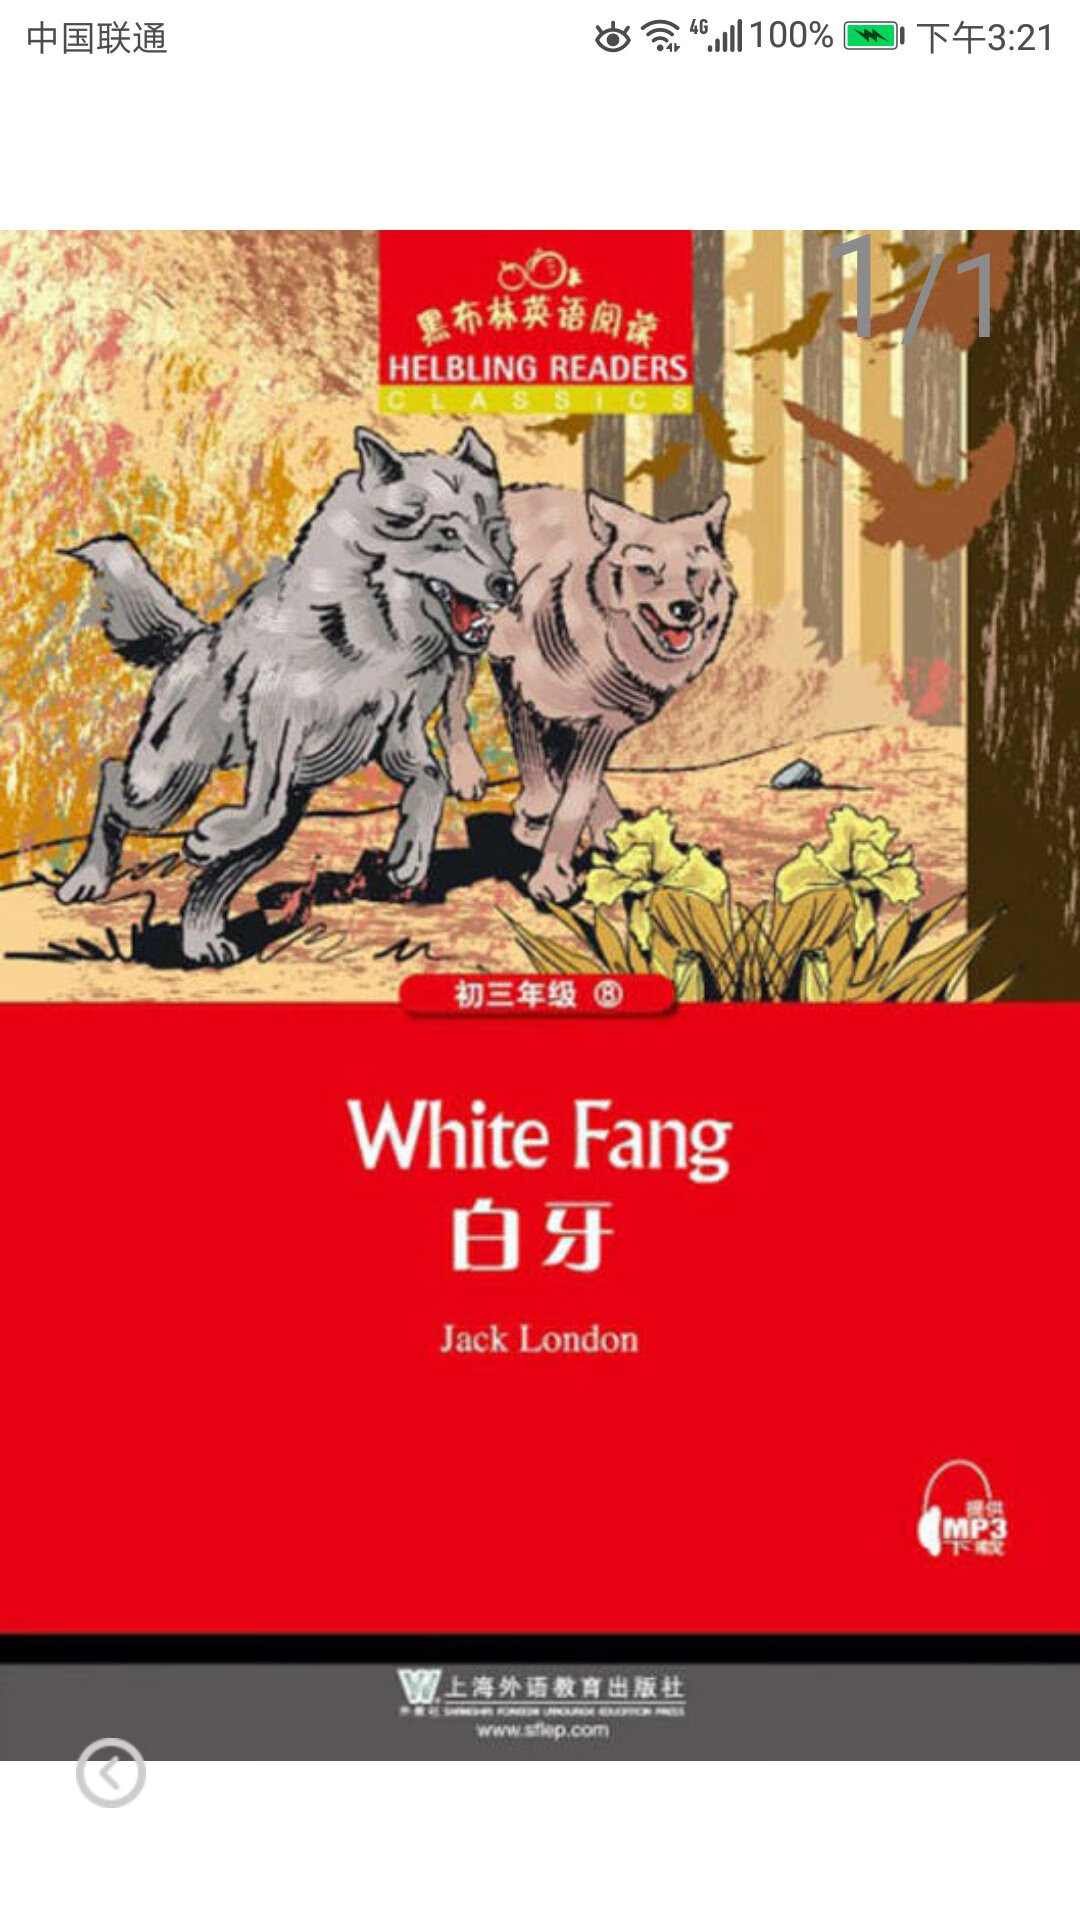 上海外教出版社推出的黑布林英语阅读系列丛书，平装16开，书脊胶装纸质优良，排版印刷得体大方，活动期间价格优惠，送货速度也很快，非常满意。